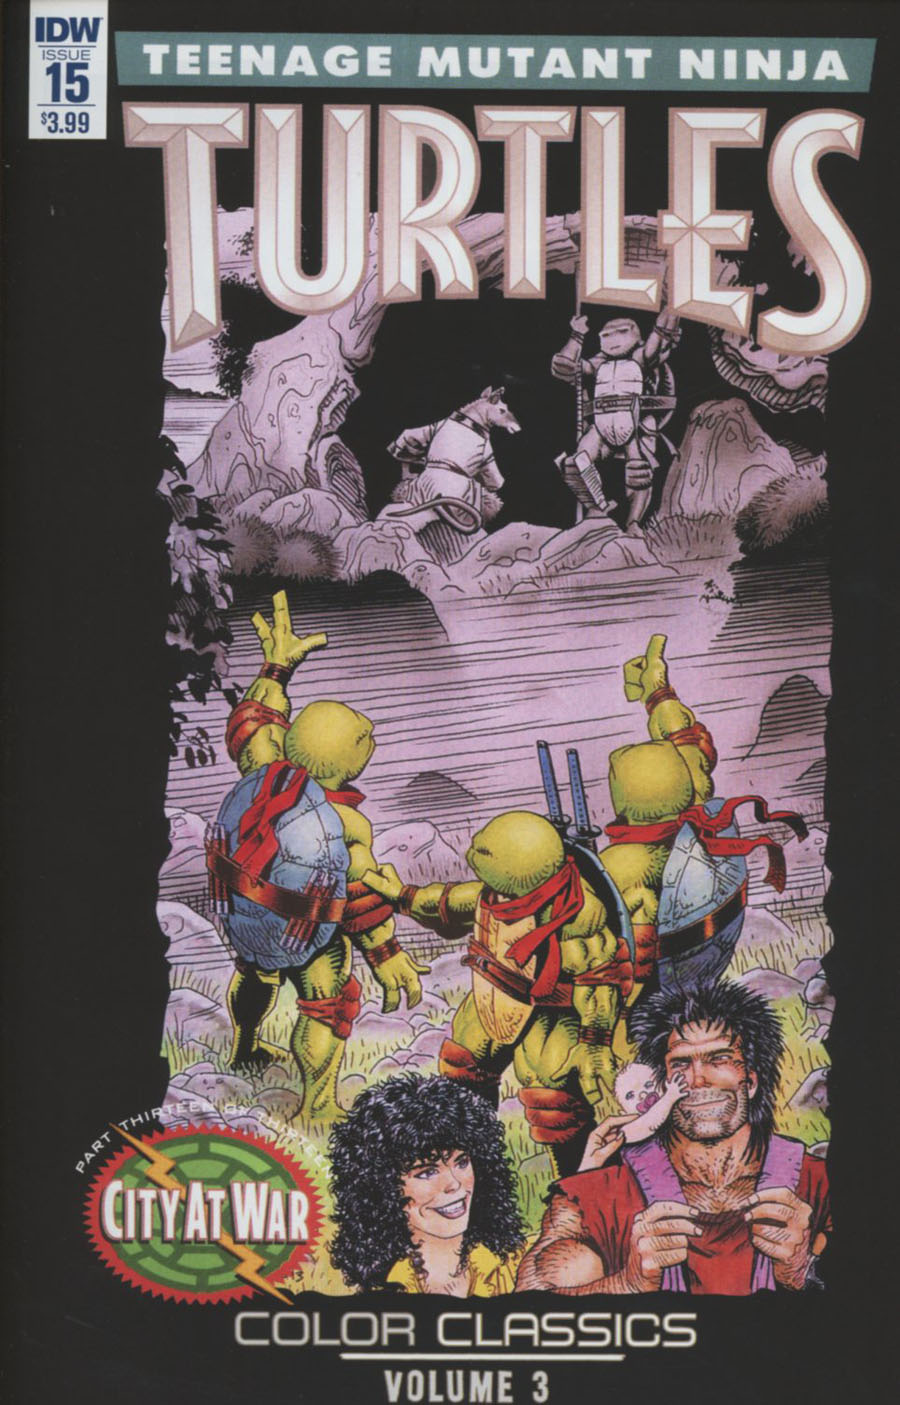 Teenage Mutant Ninja Turtles Color Classics Vol 3 #15